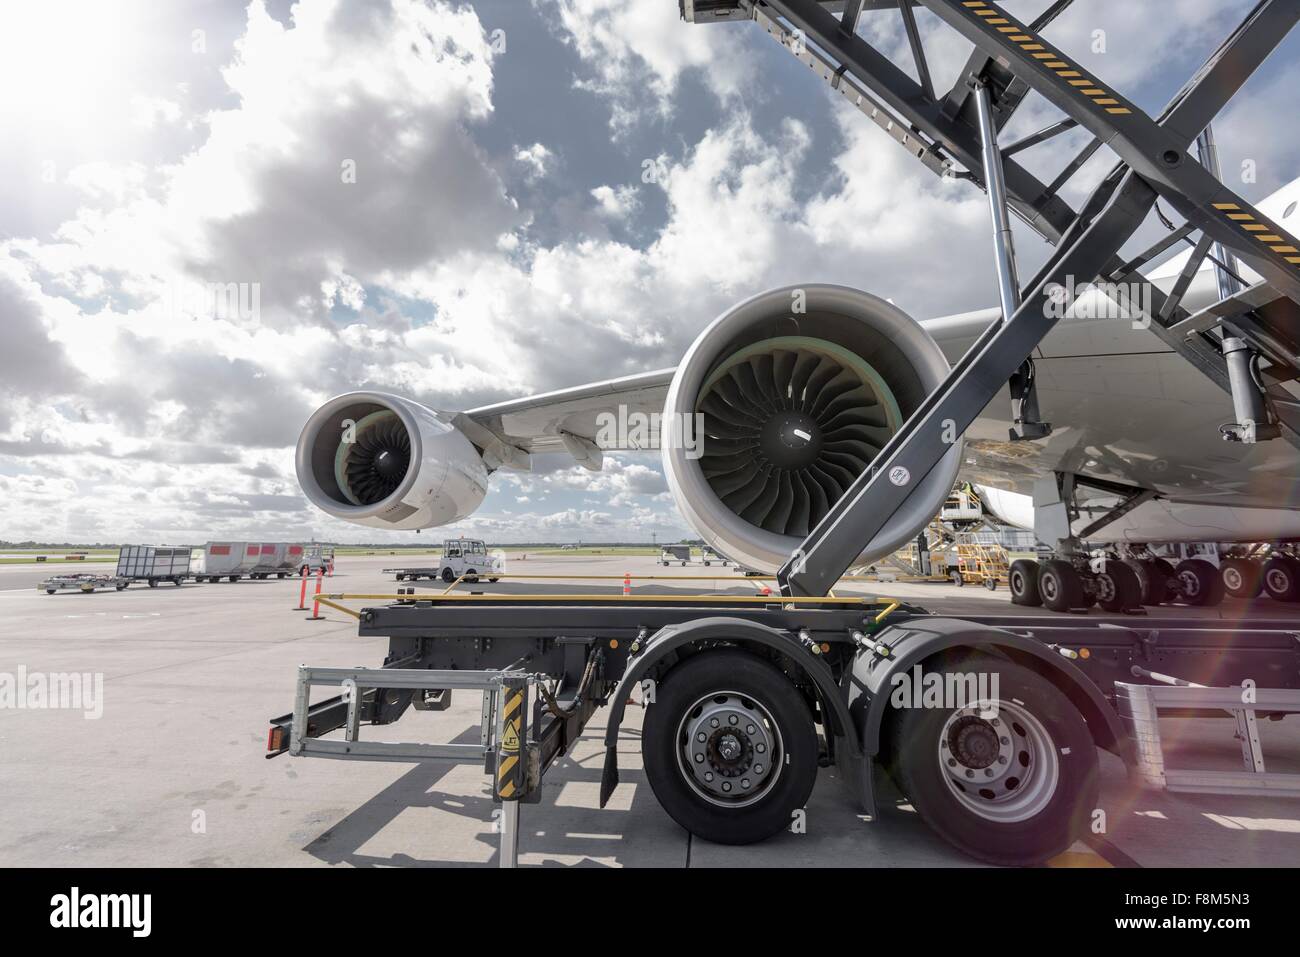 Vista de A380 Motores jet en el aeropuerto Foto de stock